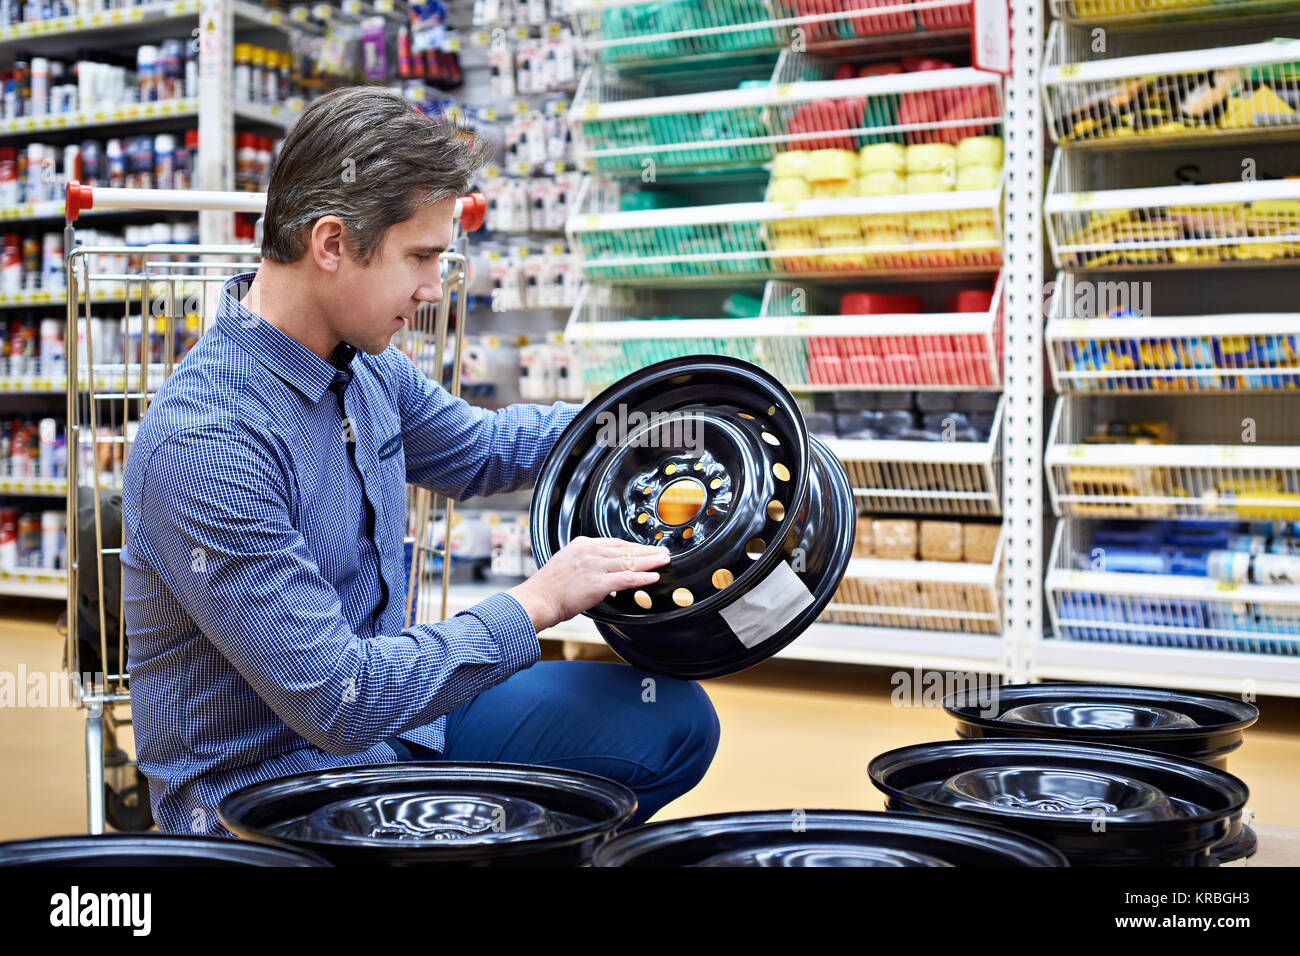 El hombre elige y compra los discos de metal con ruedas de un coche en una tienda. Foto de stock